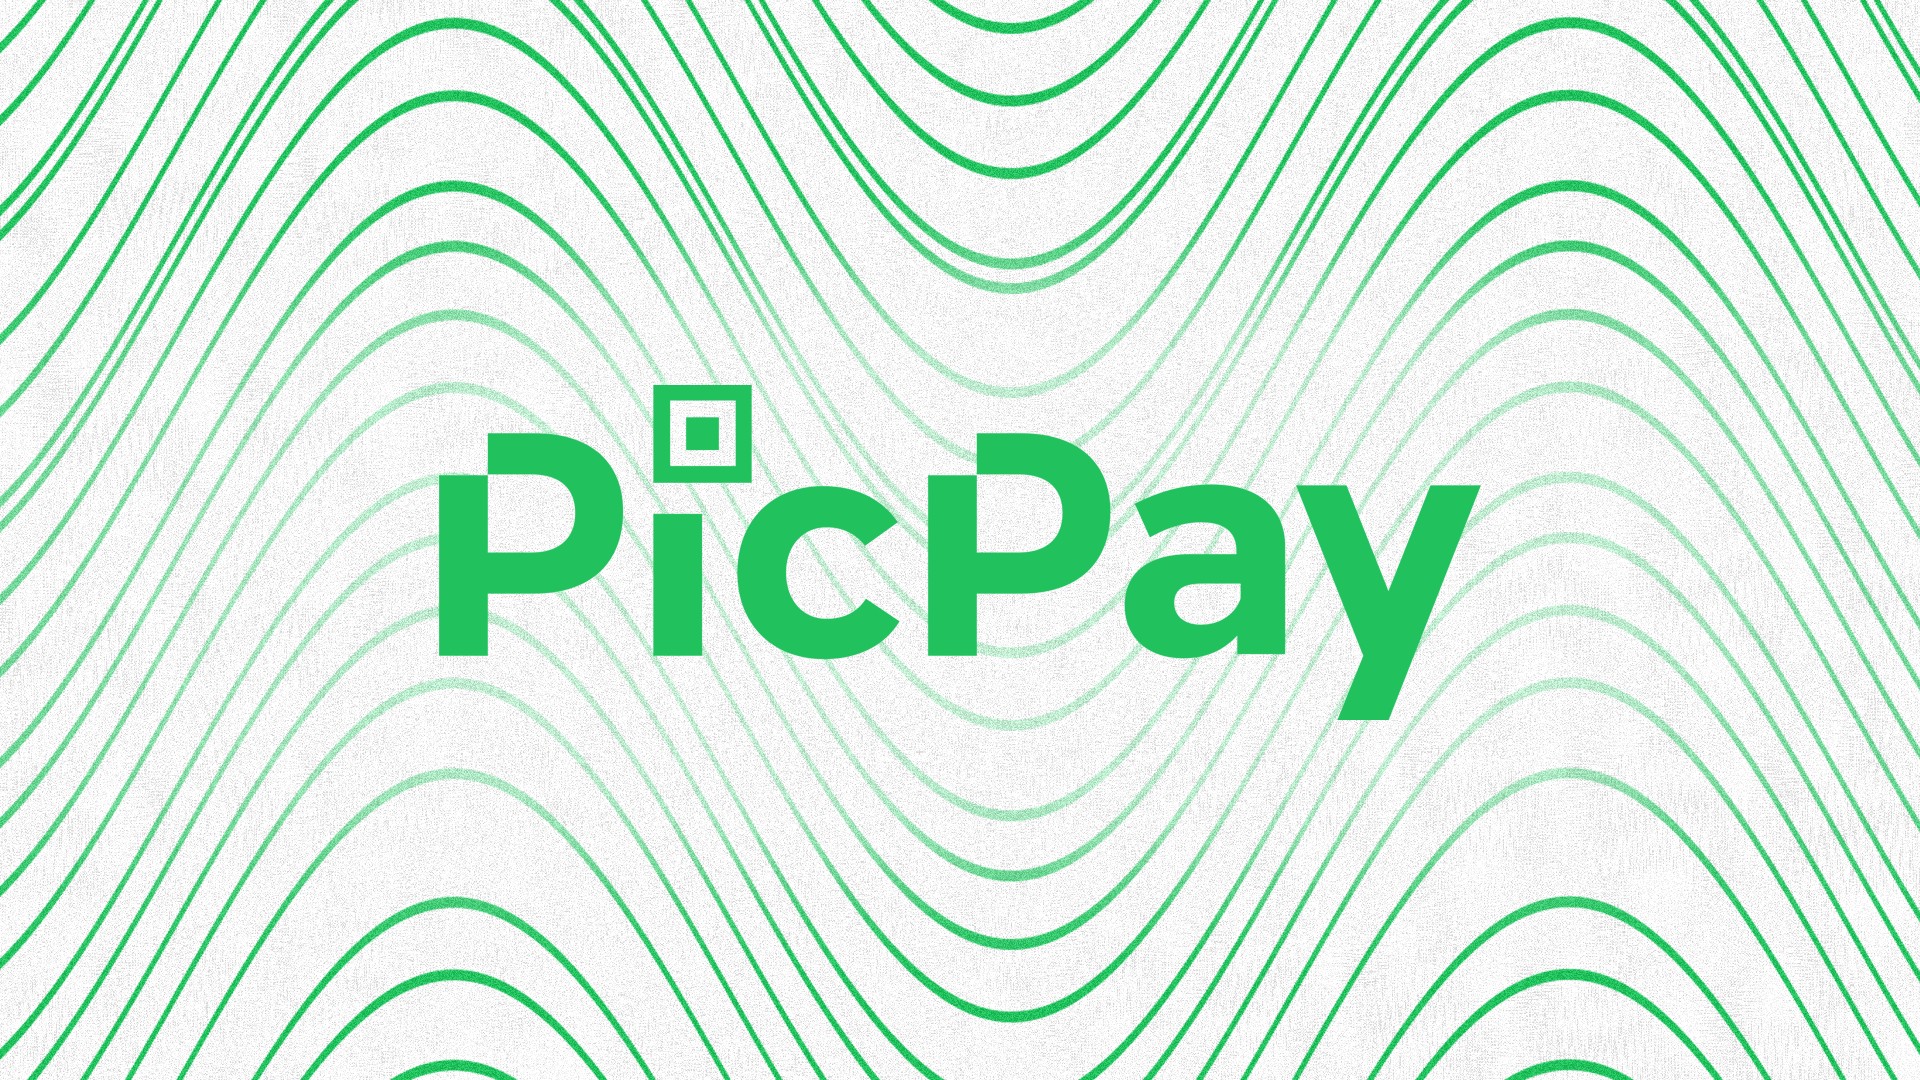 PicPay lanza un fondo de inversión exclusivo con aportes a partir de R $ 100